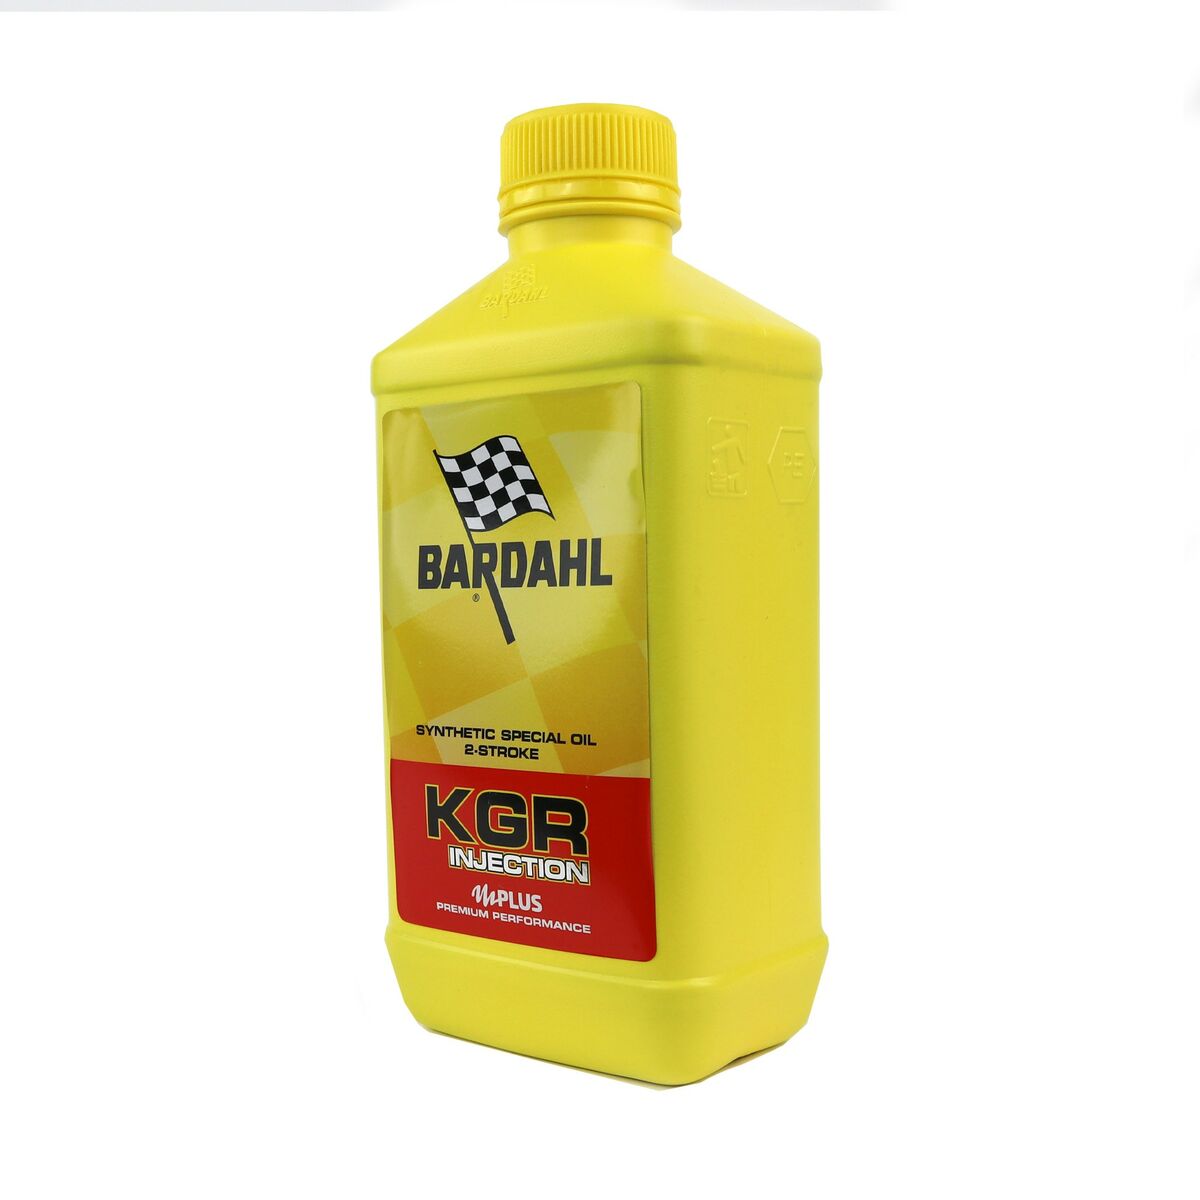 Produto de Limpeza para Injetores Gasolina Bardahl BARD226040 1 L Gasolina Motor 2 Tempos